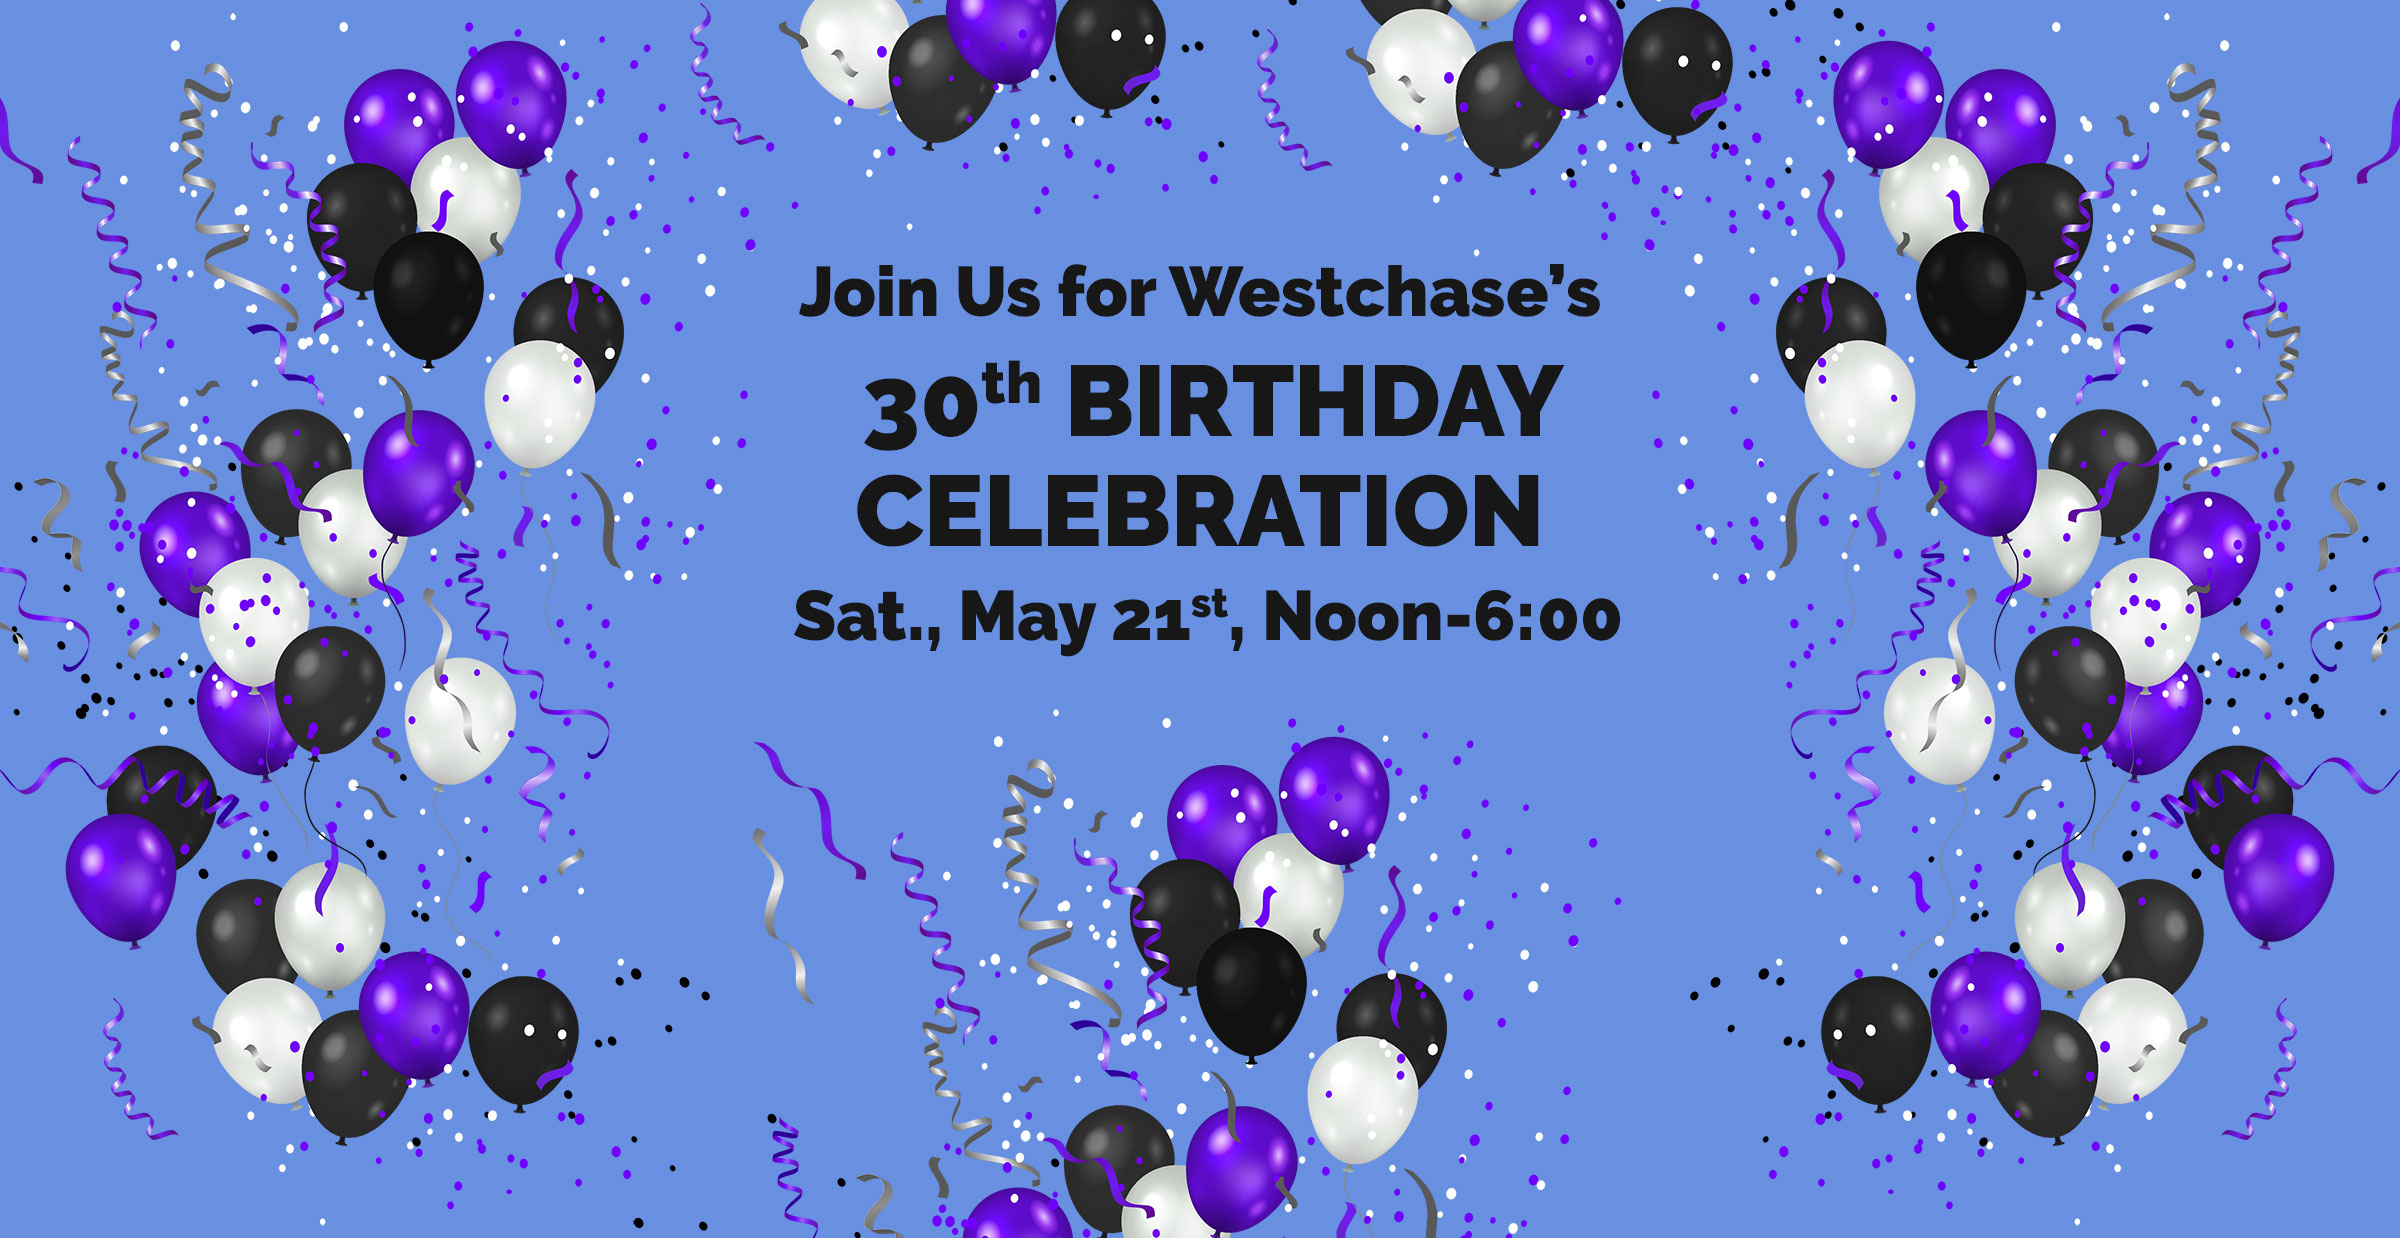 westchase 30th birthday celebration